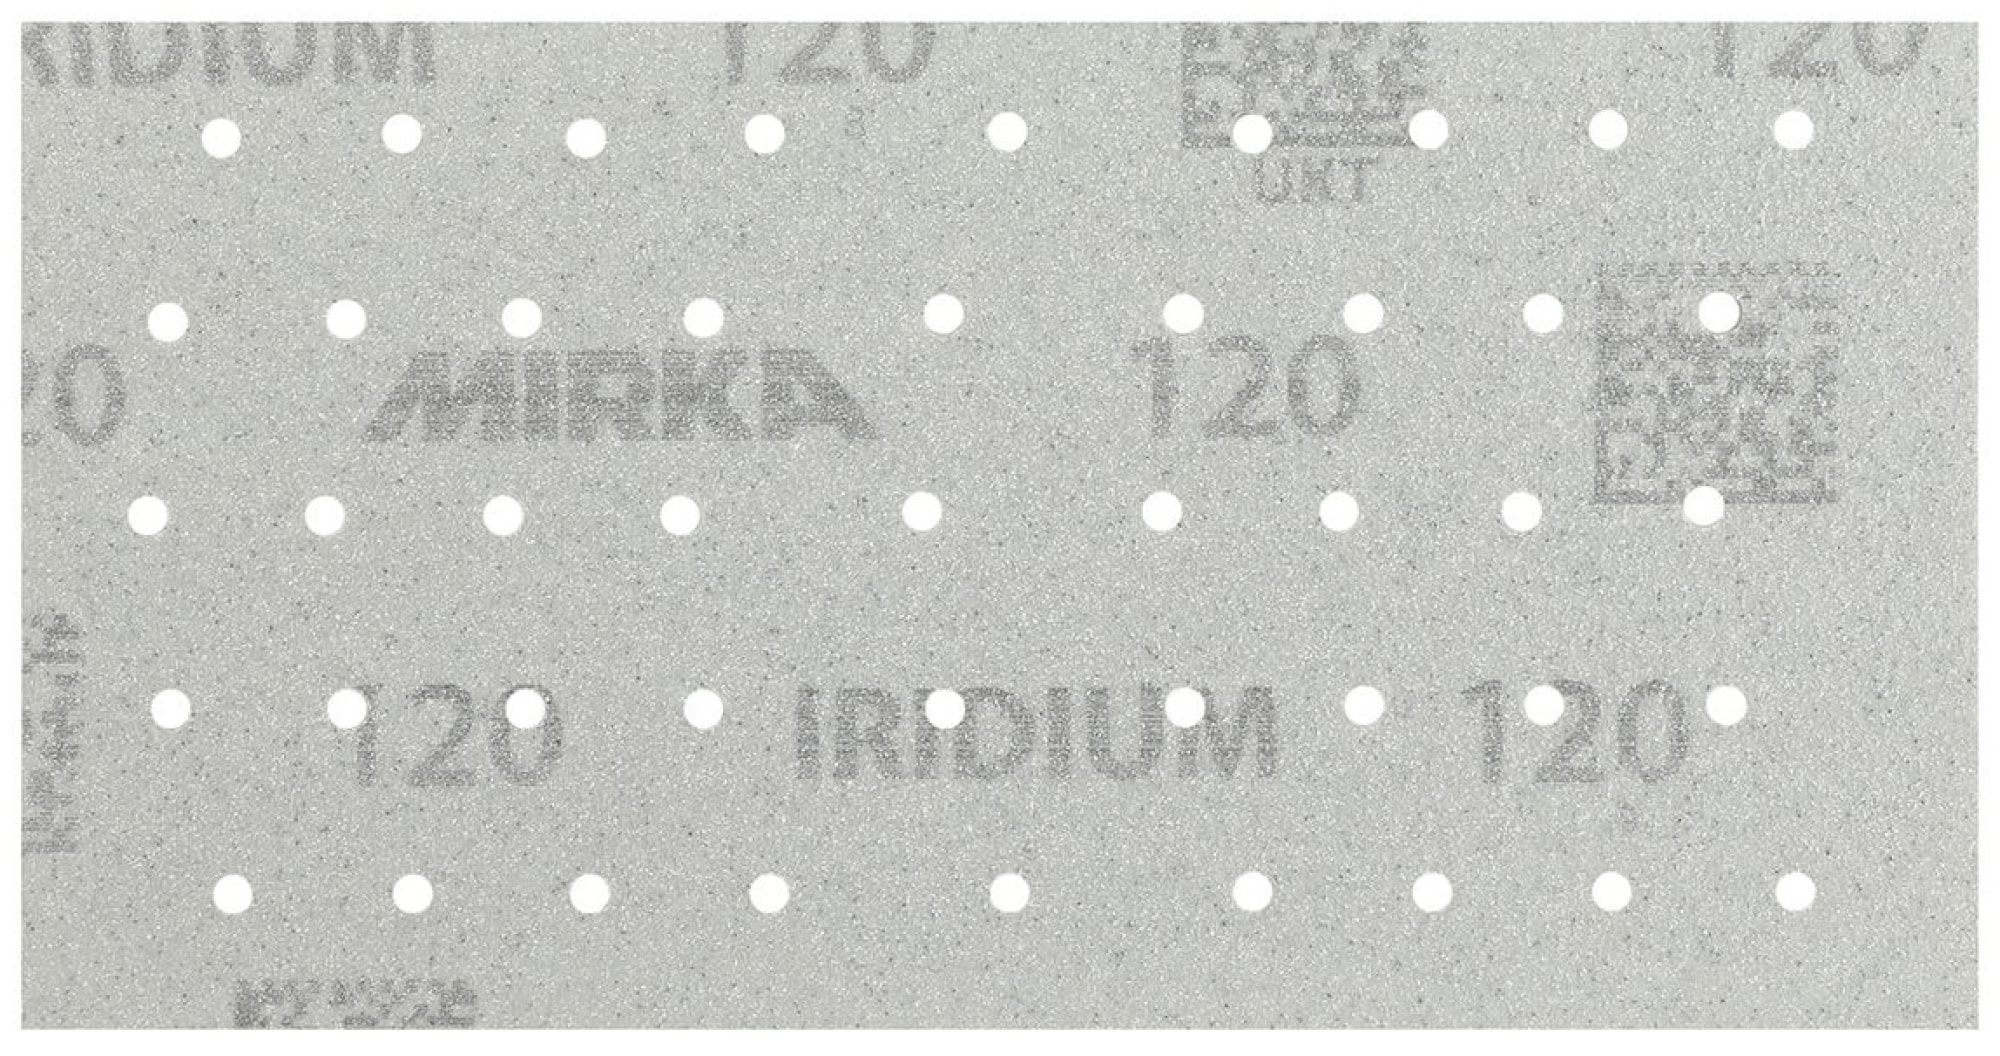 Mirka® Iridium® 246AP05012, 93 mm x 180 mm, P120, Multilochung, Kletthaftend, Schleifstreifen mit Keramik- und Aluminiumkorn